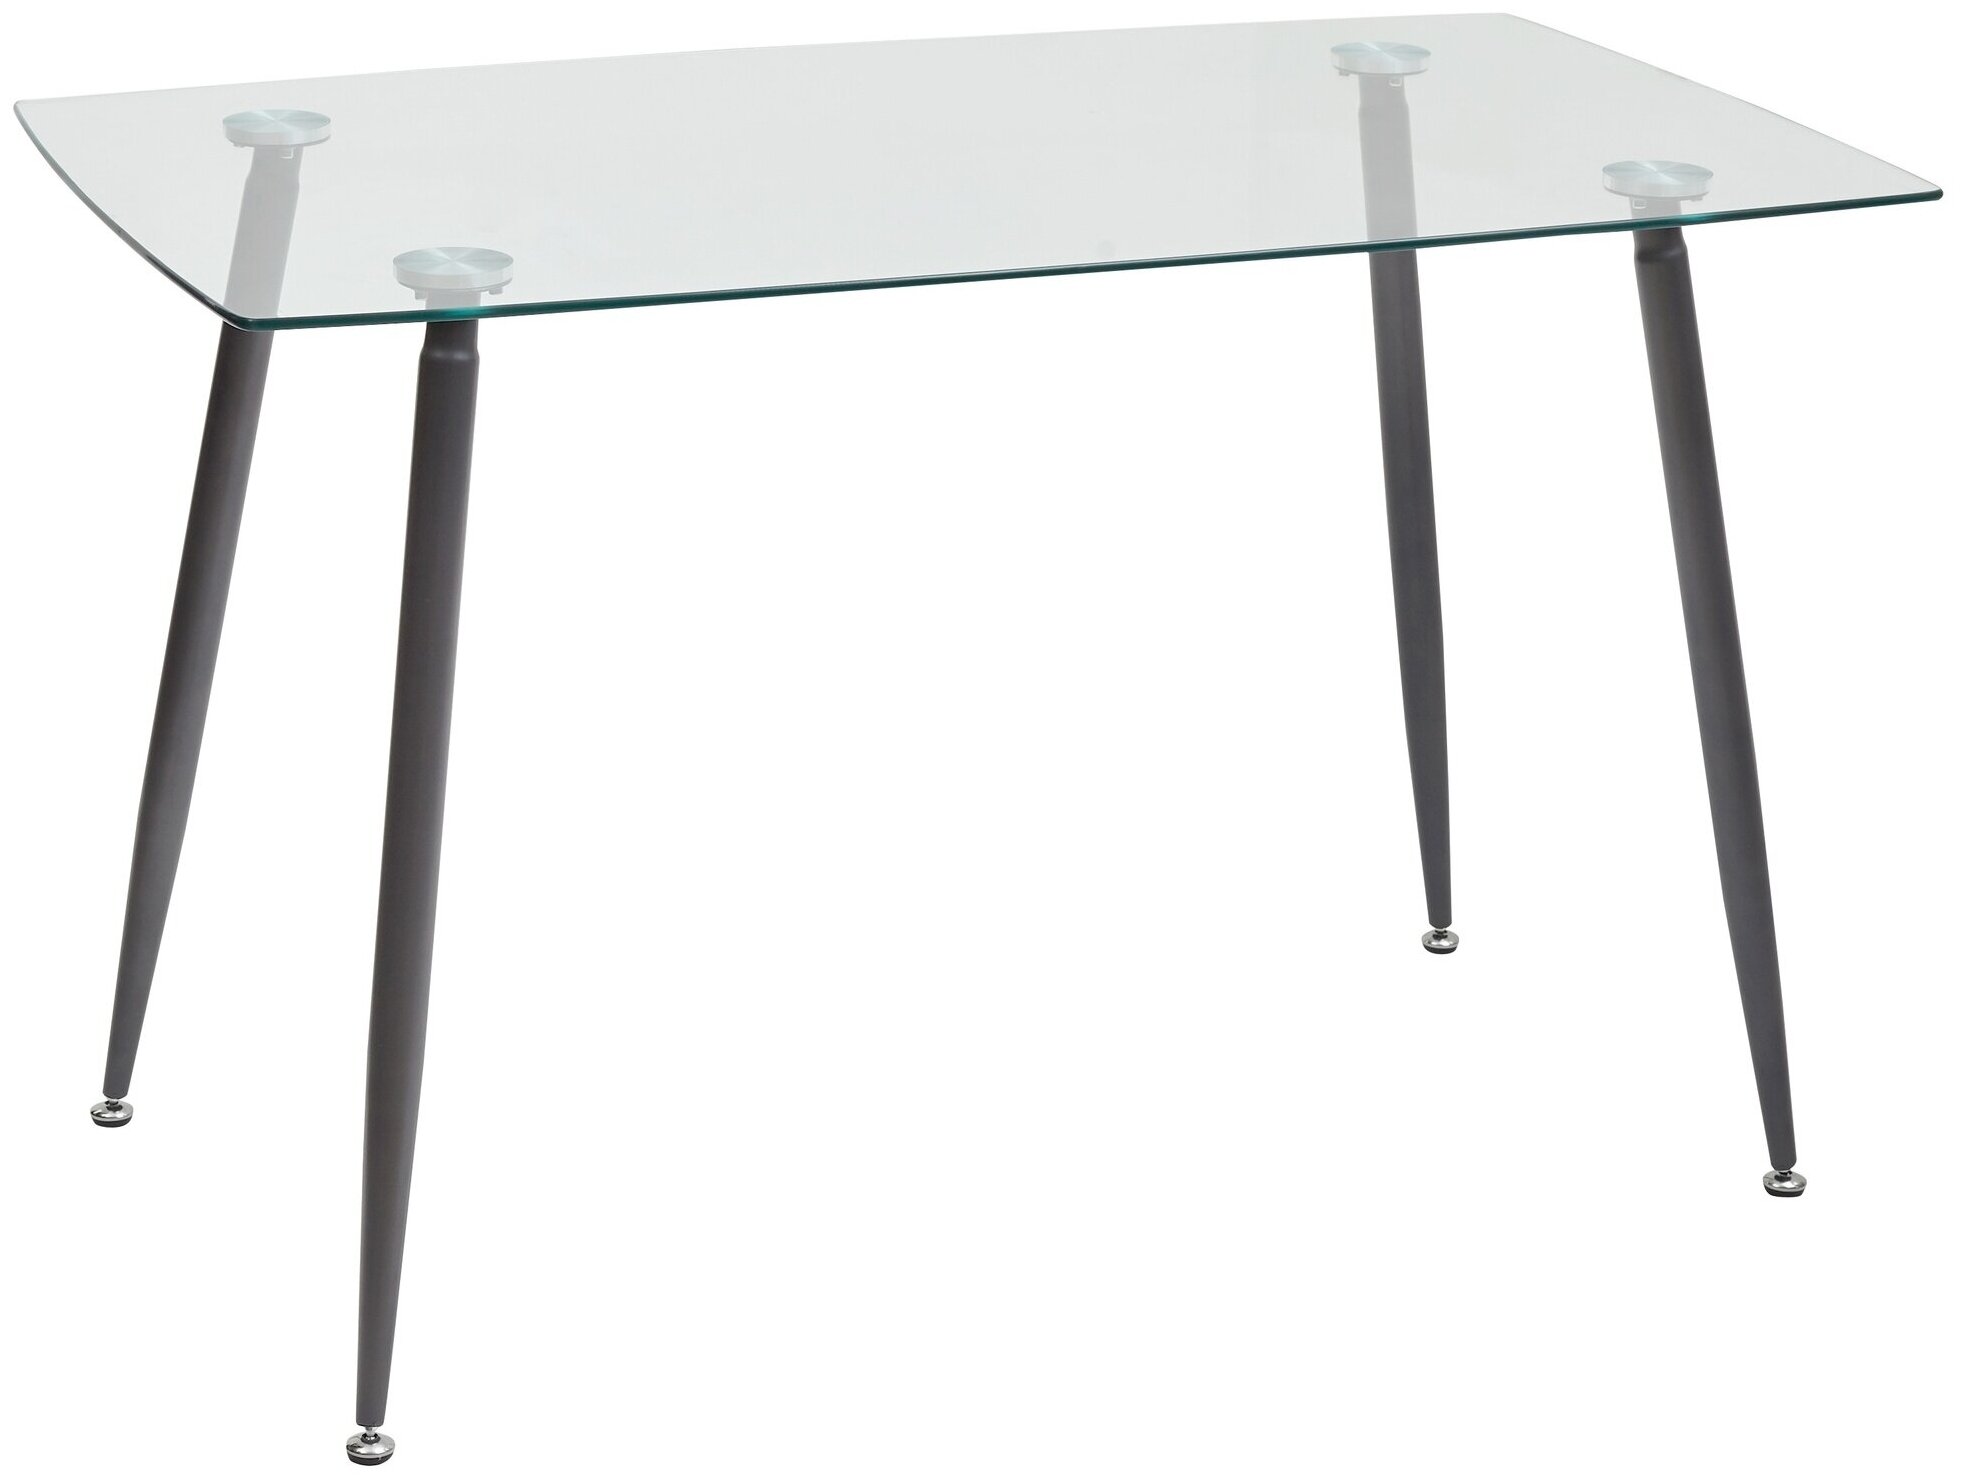 Кухонный-обеденный Стол стеклянный прямоугольный Ron 120 прозрачный (120 х 70 см.) m-sity (м-сити)